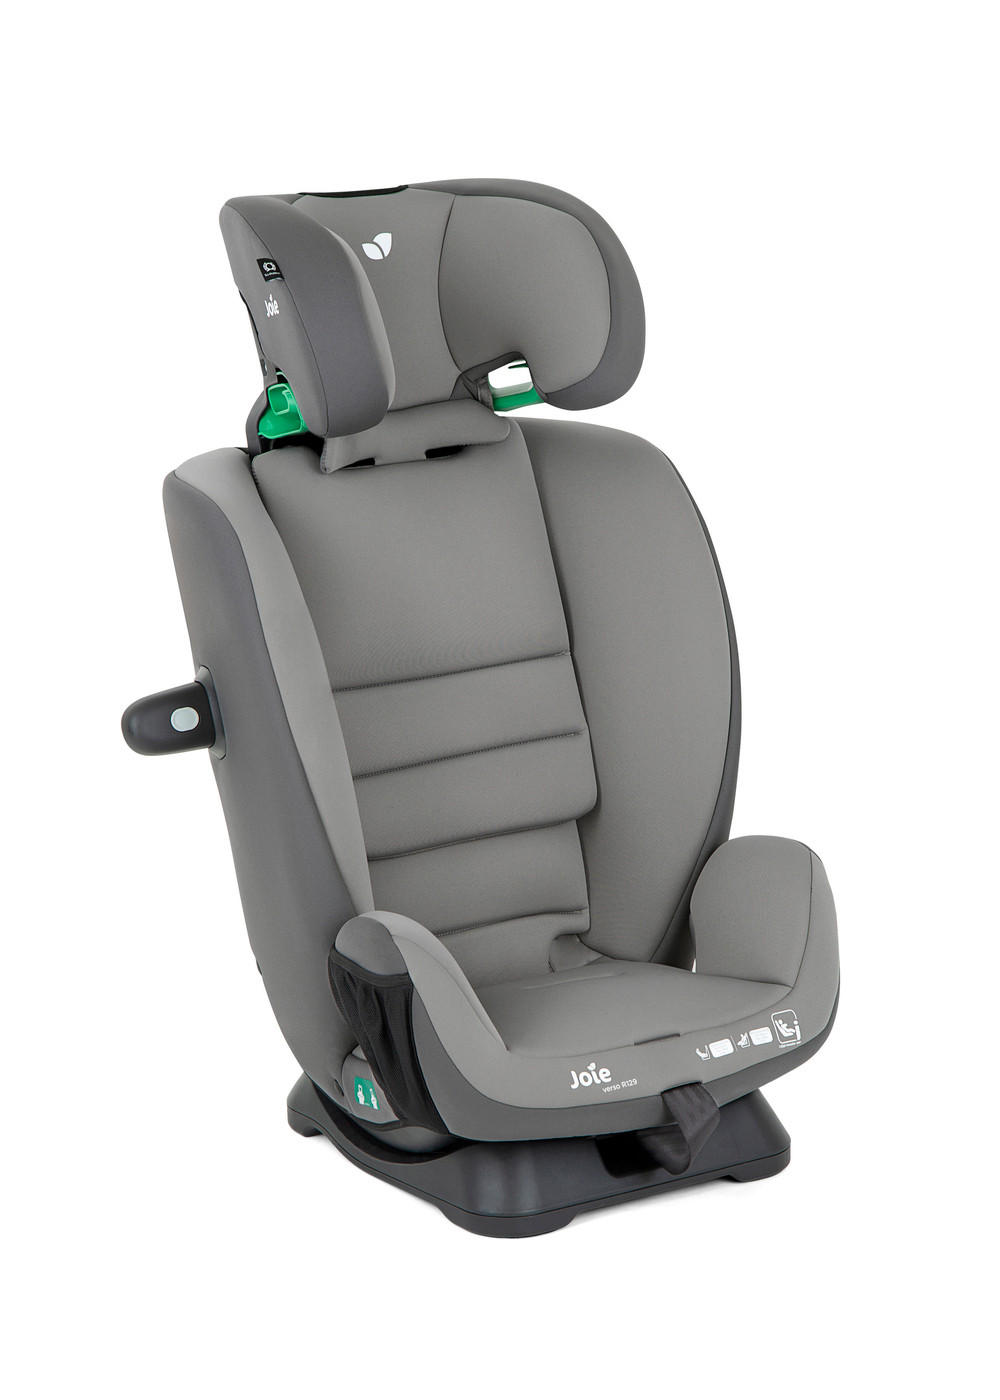 NURII Seat Back Protector Zweistufig 12v Sitzmatte Auto Heizung rutschfest  Universal 12 Volt Heizung für Auto Zum Fahren Geeignet,Schwarz-2Stück :  : Baby